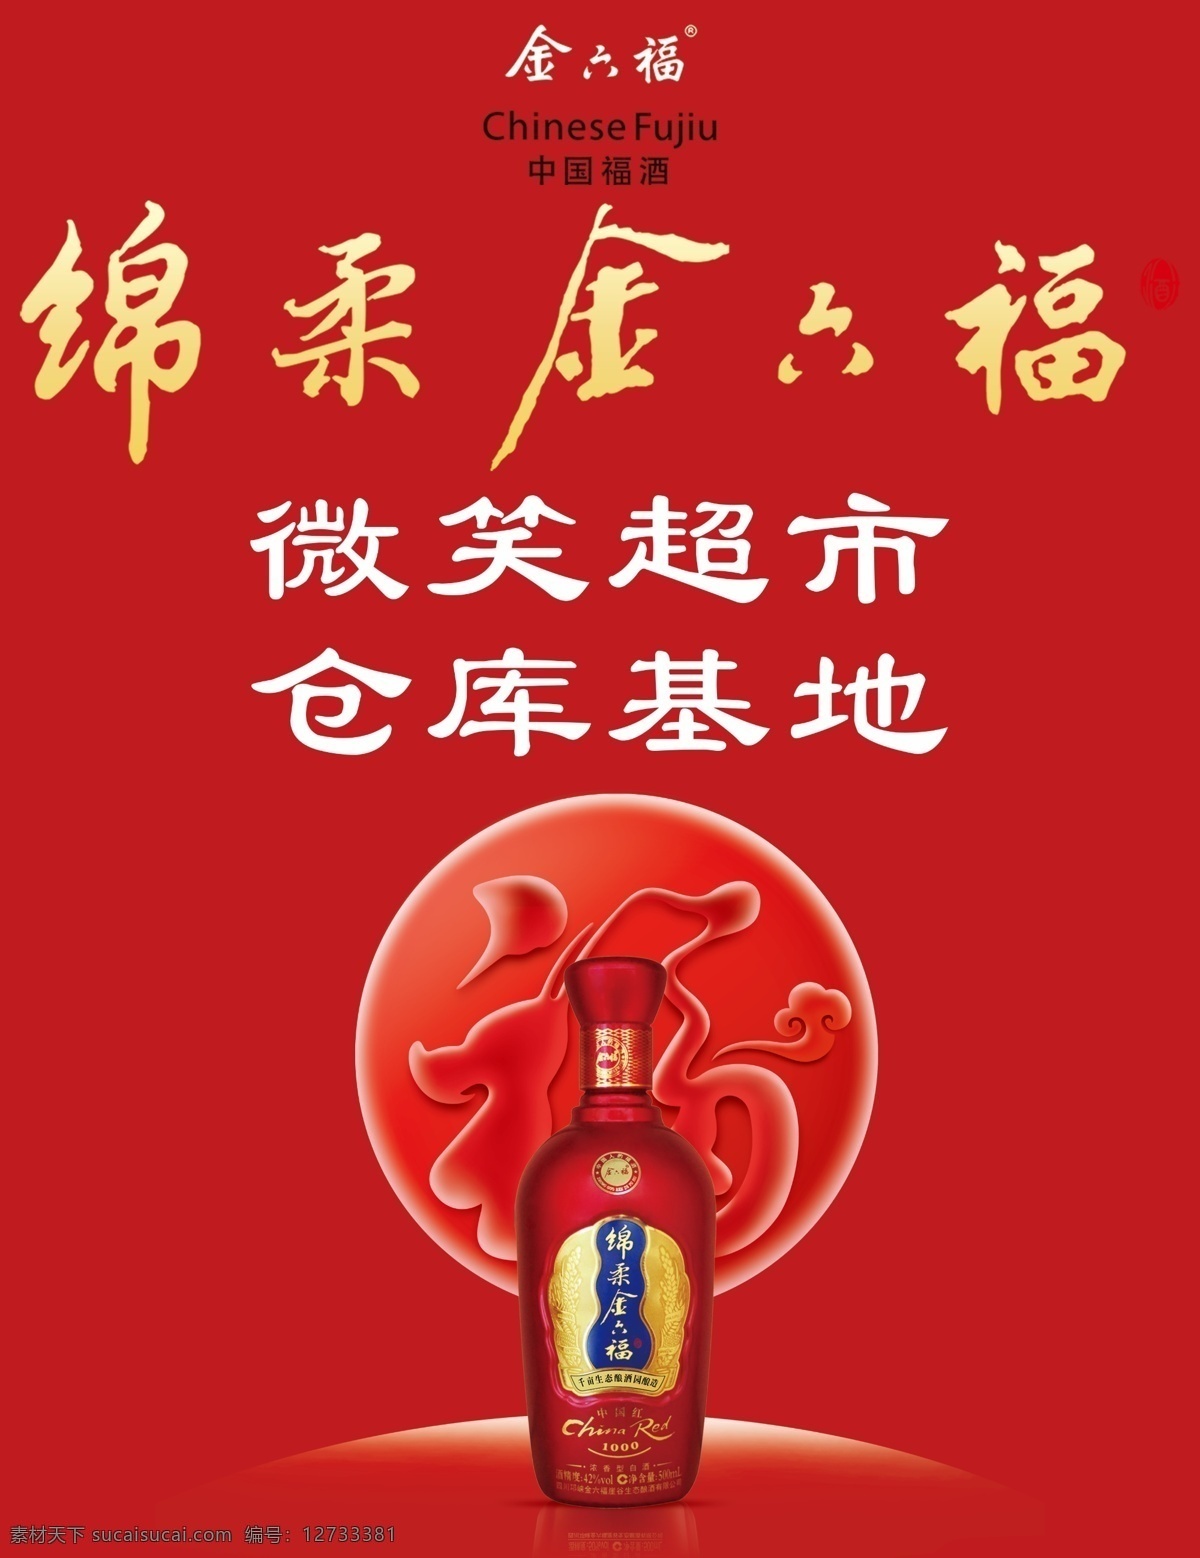 金六福酒 私人订制 婚宴用酒 结婚用酒 白酒 优惠活动 室内广告设计 标志图标 企业 logo 标志